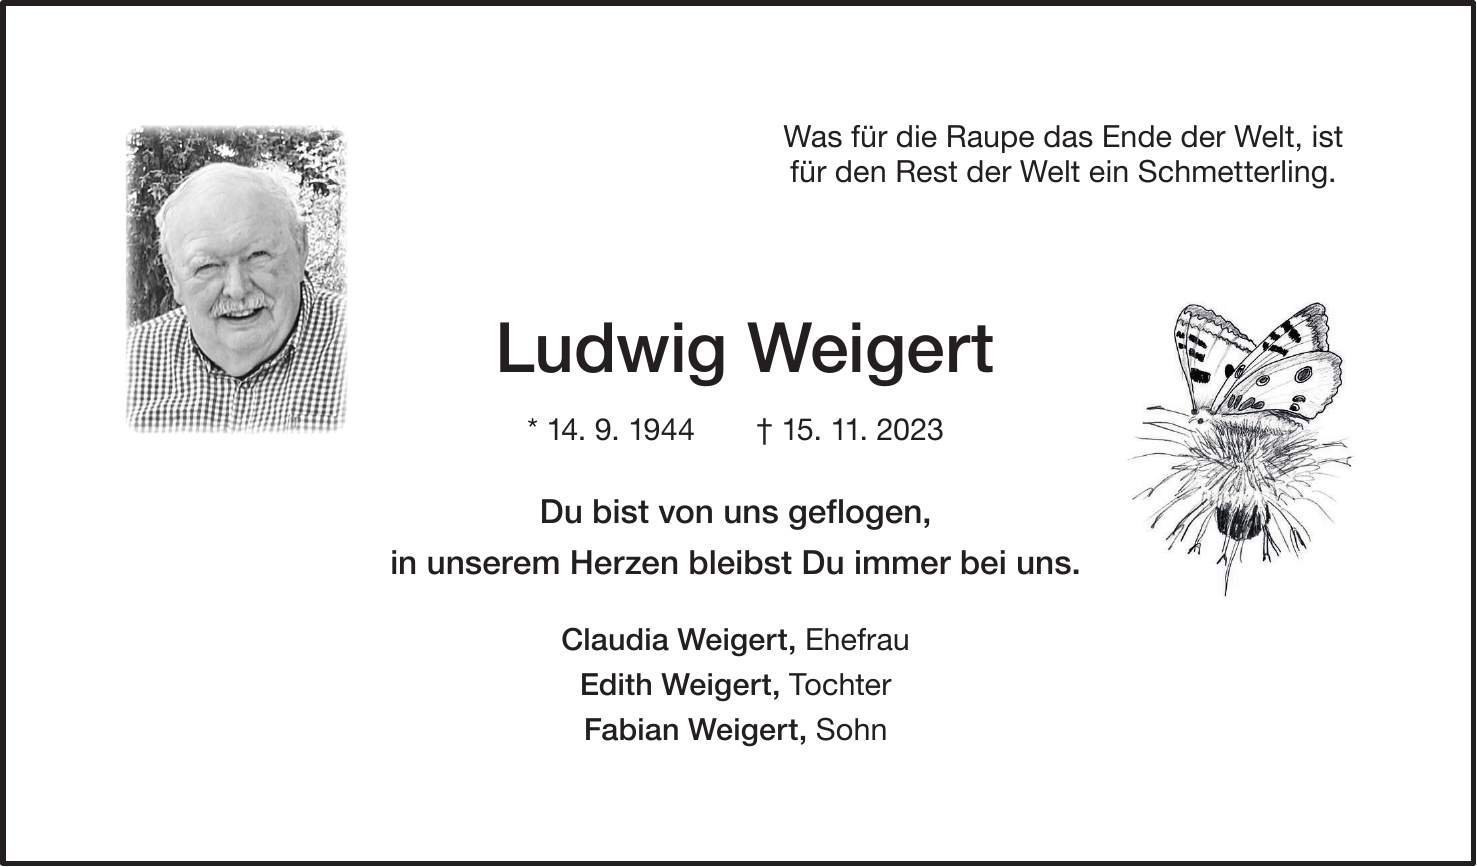 Ludwig Weigert * 14. 9. 1944 + 15. 11. 2023 Du bist von uns geflogen, in unserem Herzen bleibst Du immer bei uns. Claudia Weigert, Ehefrau Edith Weigert, Tochter Fabian Weigert, SohnWas für die Raupe das Ende der Welt, ist für den Rest der Welt ein Schmetterling.